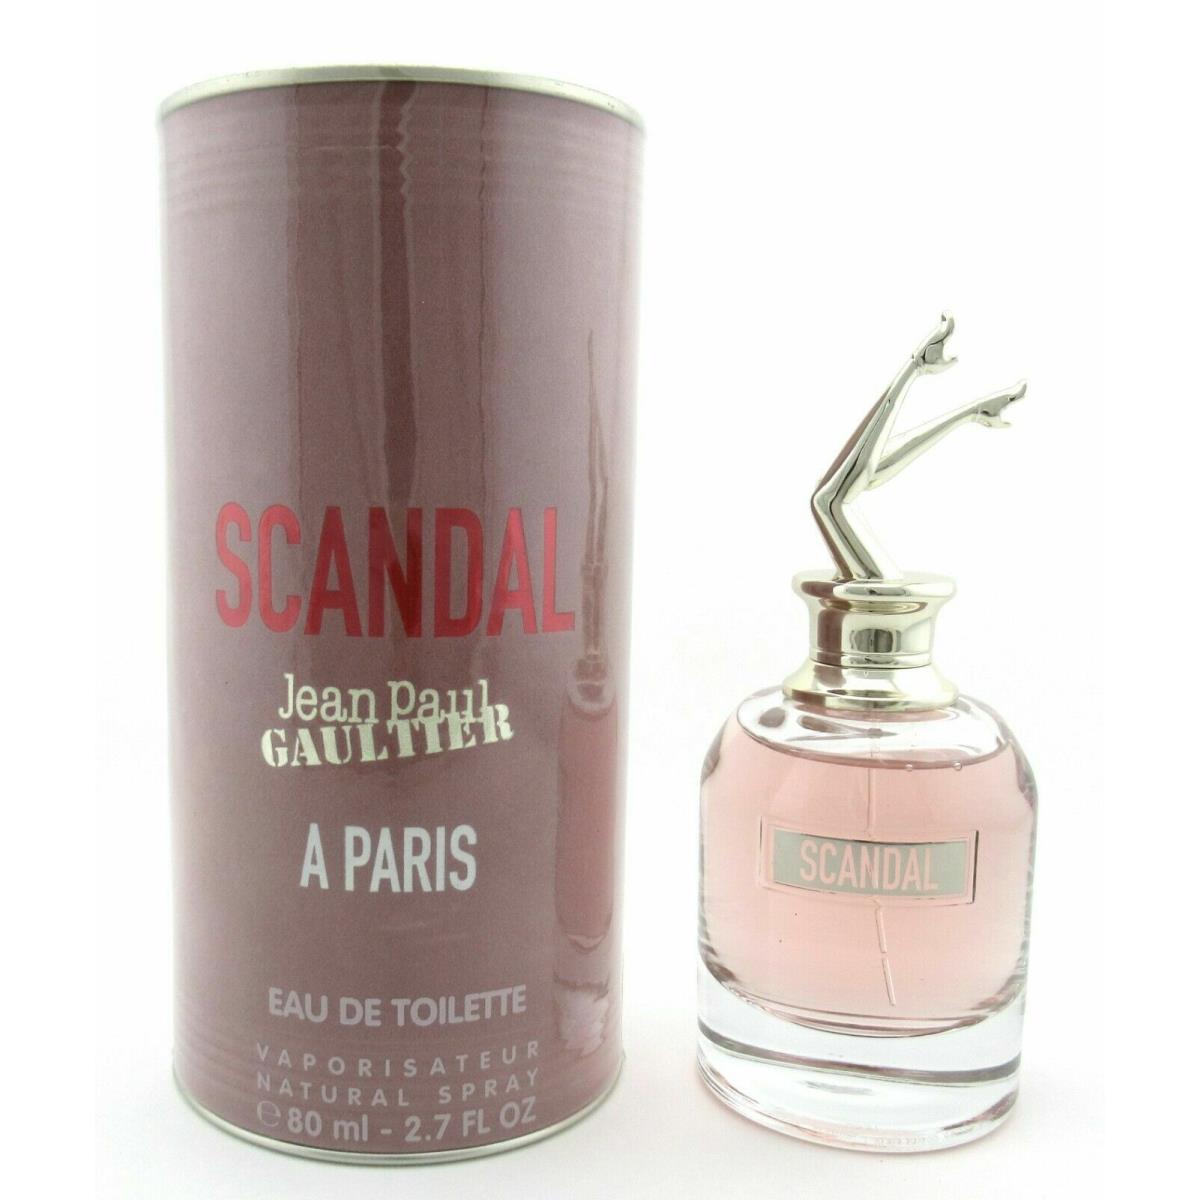 Jean Paul Gaultier Scandal - A Paris - Eau Detoilette 2.7oz Spray